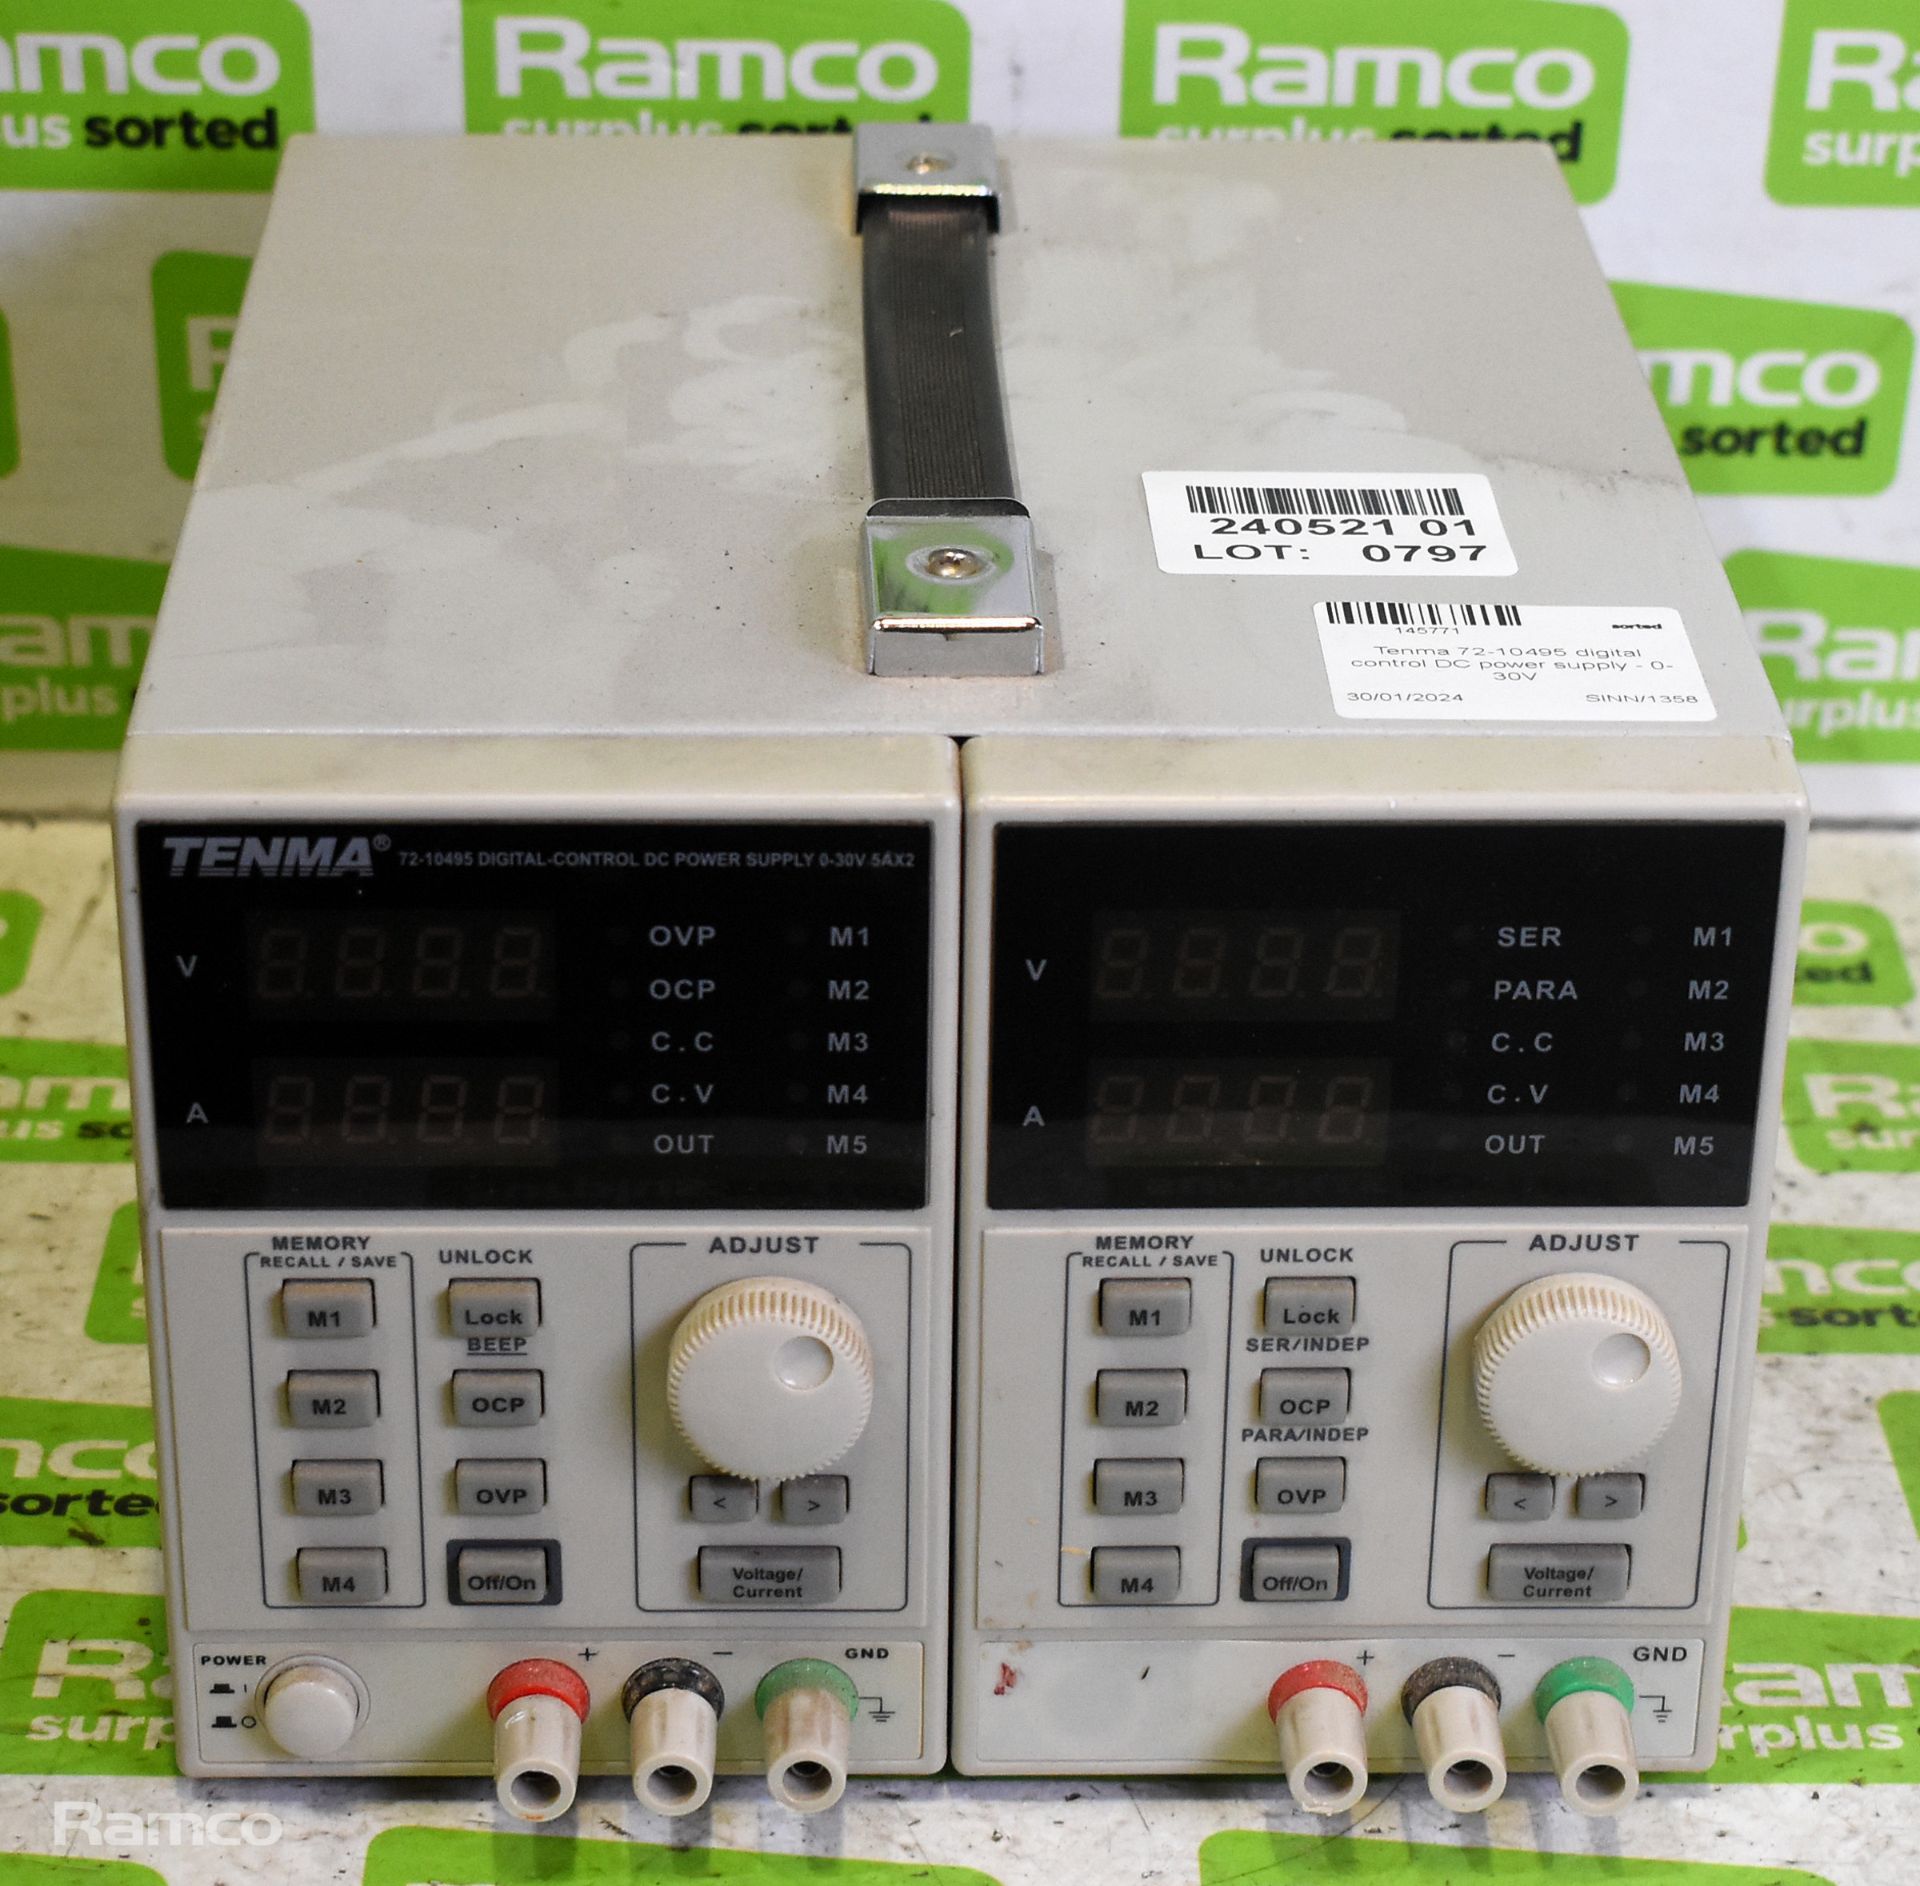 Tenma 72-10495 digital control DC power supply - 0-30V